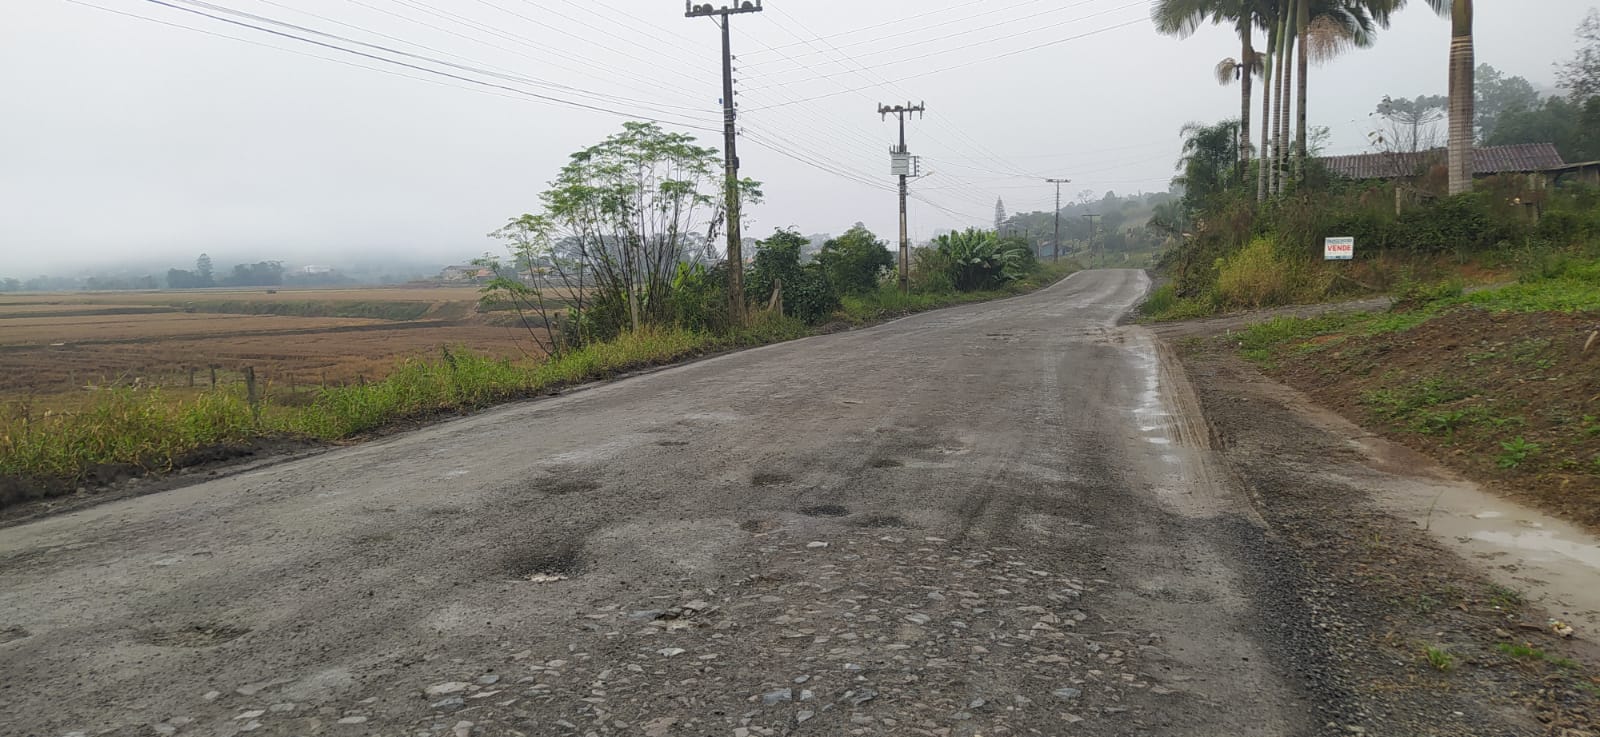 Prefeitura vai assinar ordem de serviço para pavimentação asfáltica entre Taió até Mirim Doce